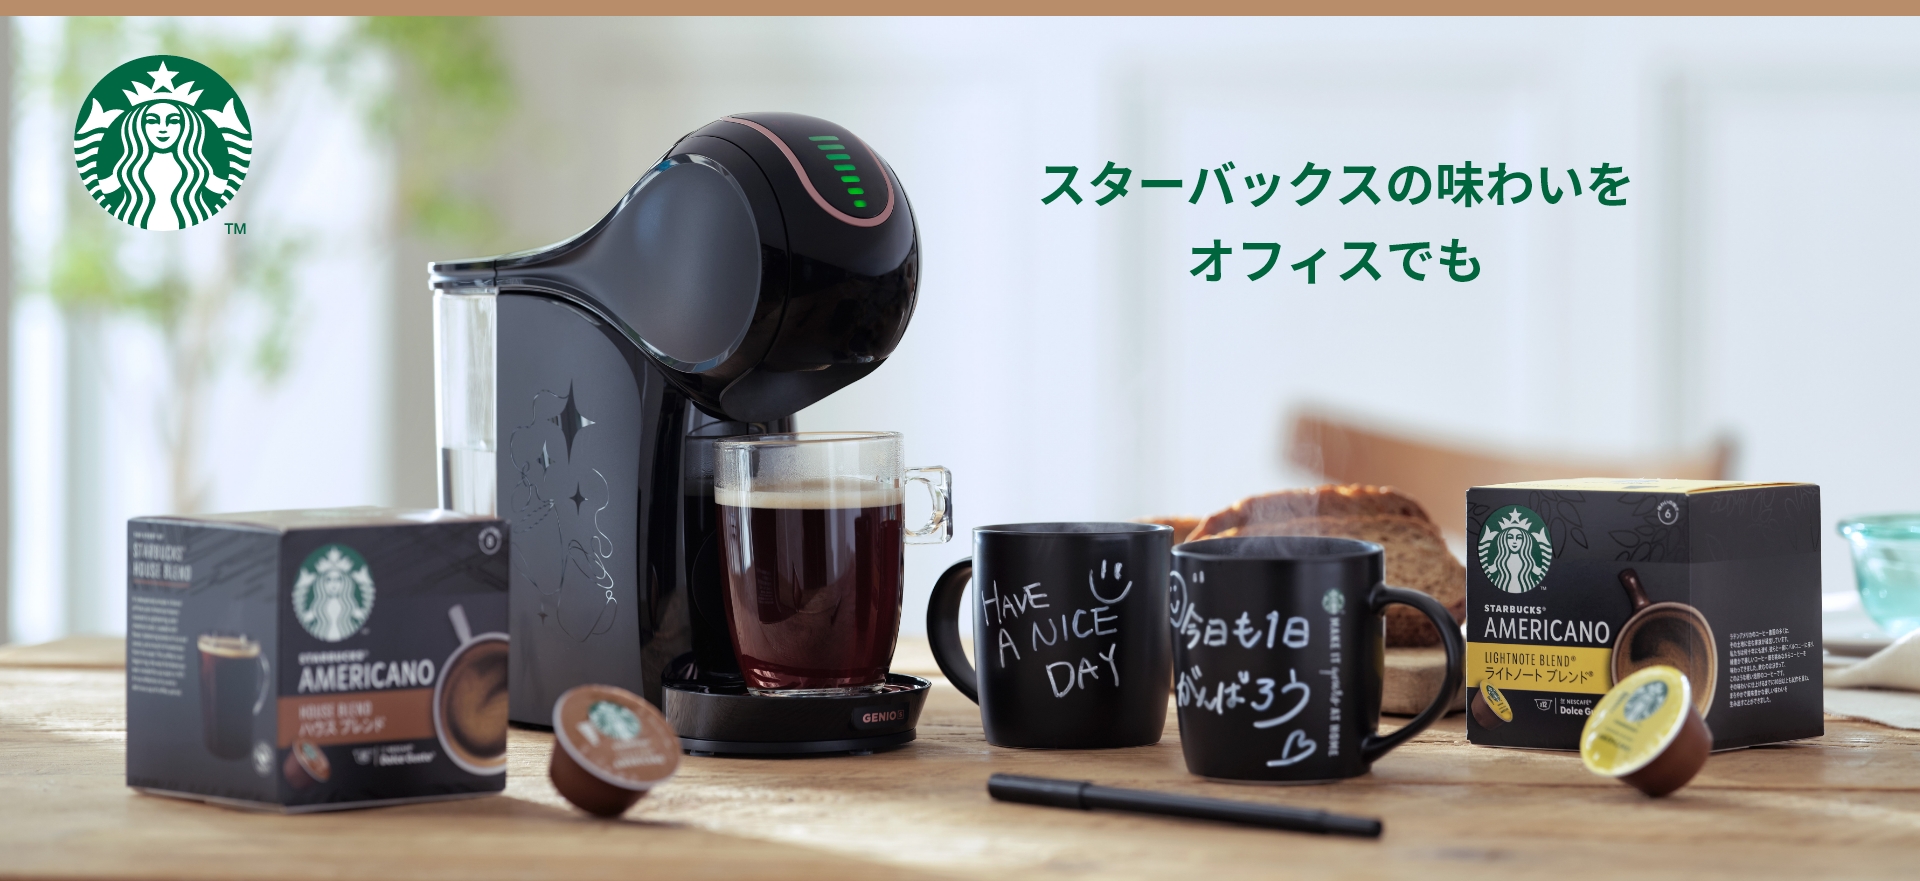 【好評日本製】ネスレ ドルチェグスト ジェニオ2 カプセル付き♪ コーヒーメーカー